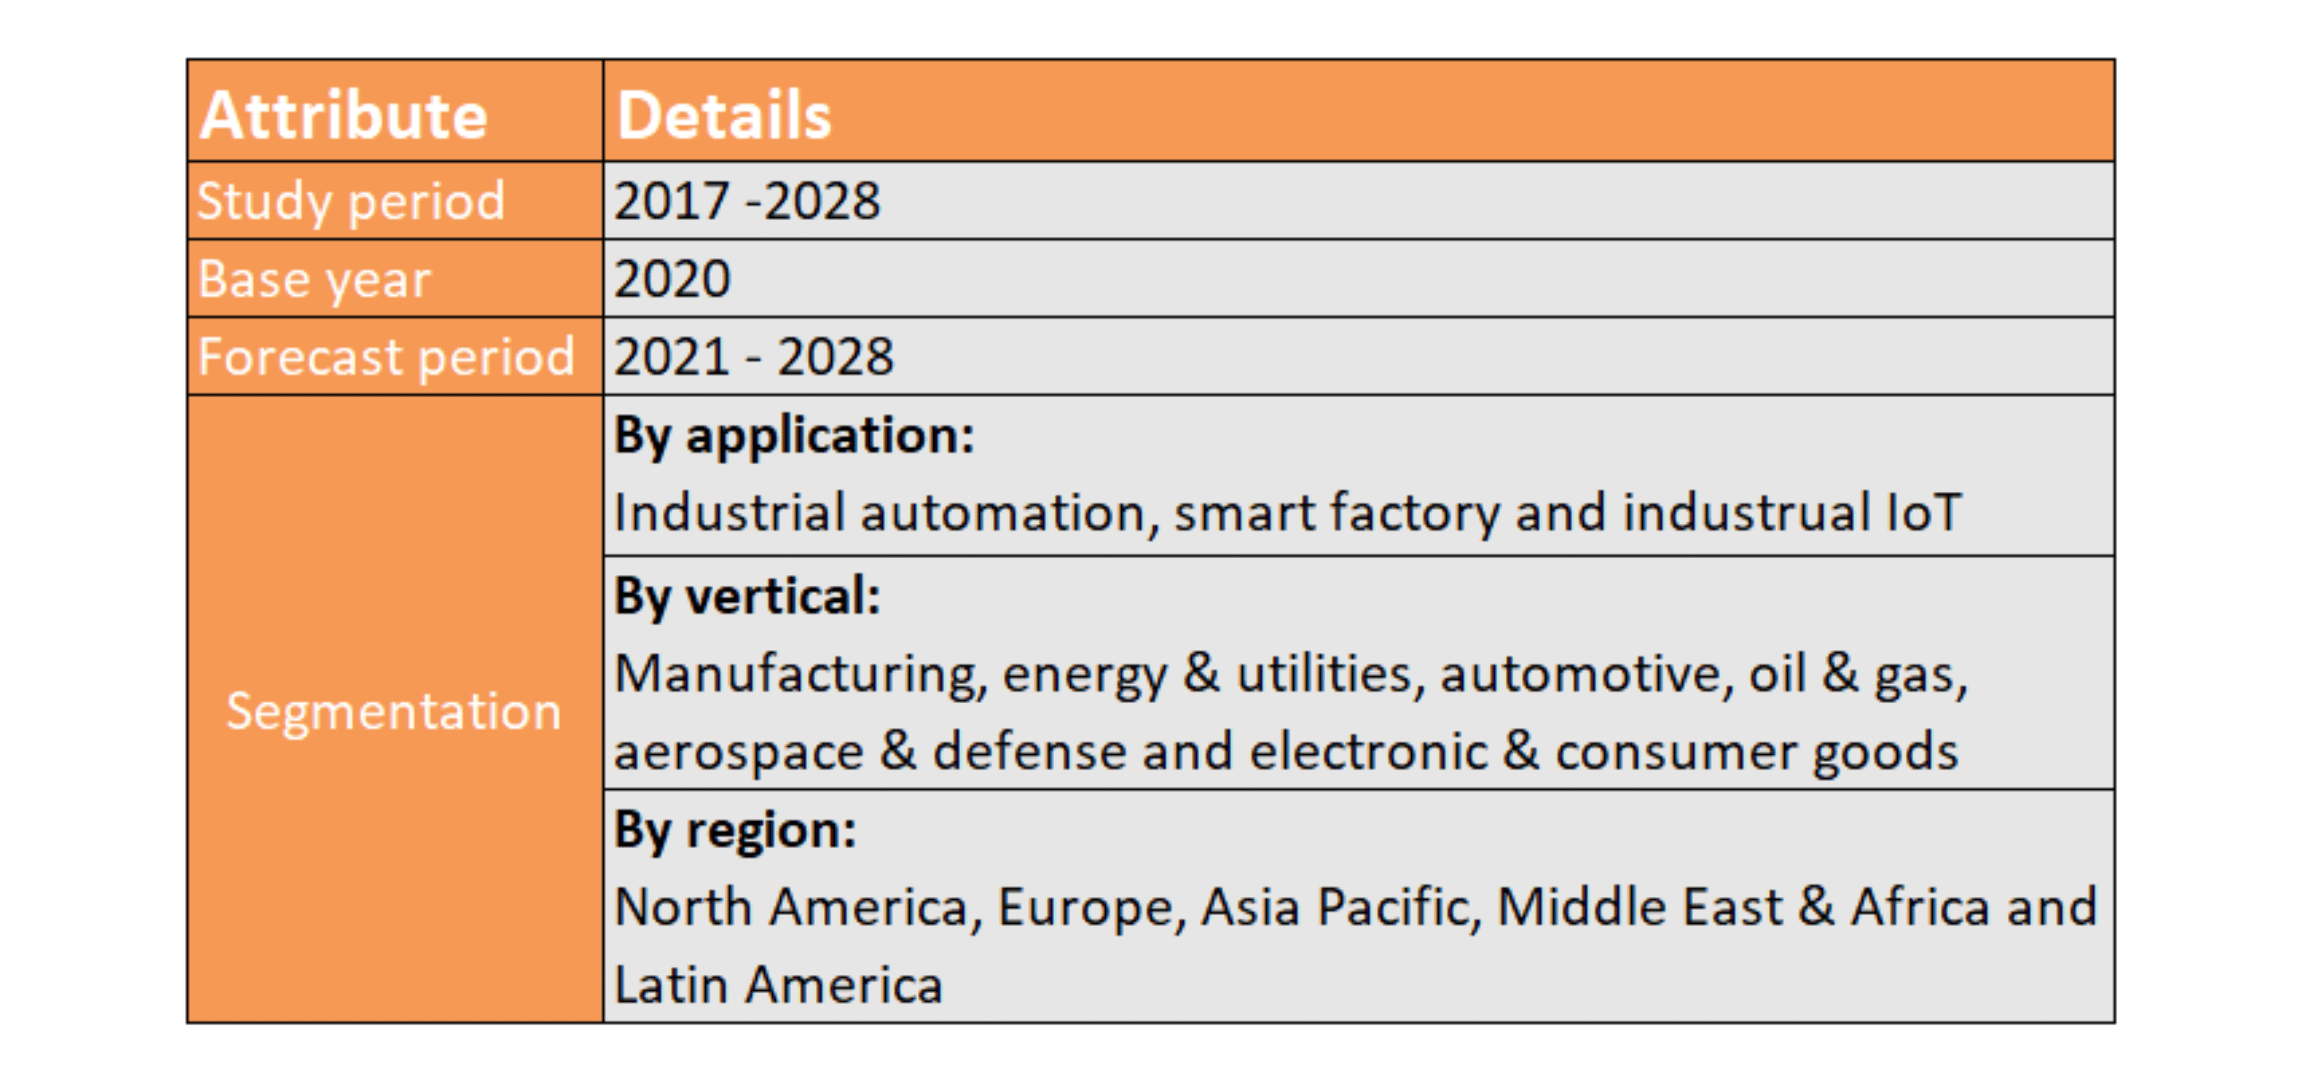  Detalhes por tempo, segmentação e região sobre o futuro da Indústria 4.0